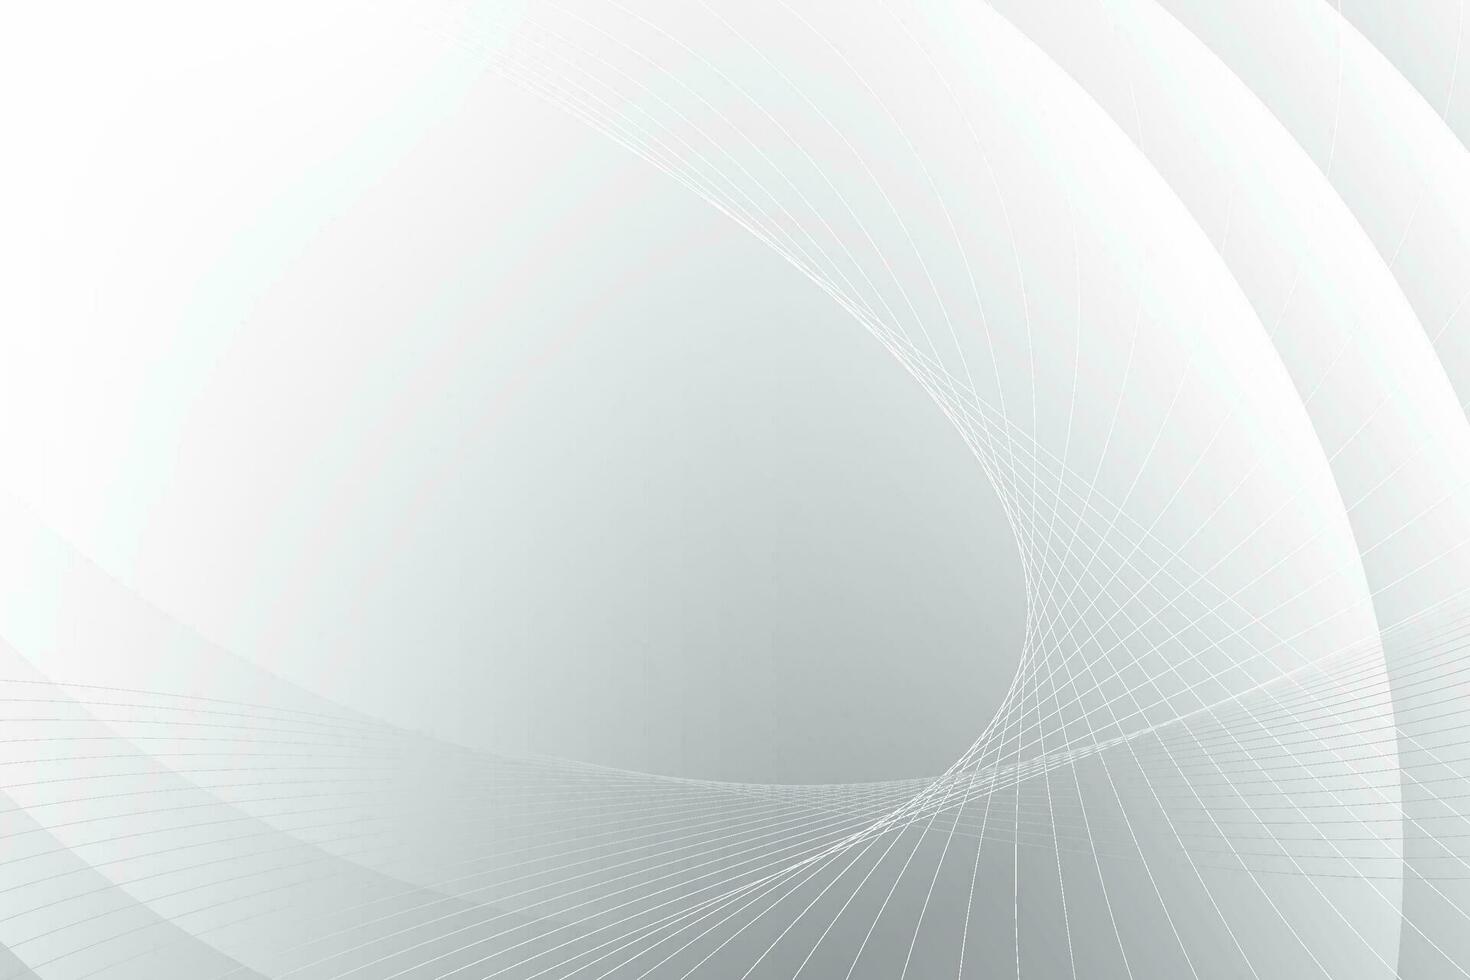 abstrakt vit och grå Färg, modern design Ränder bakgrund med geometrisk runda form, vågig linje mönster. vektor illustration.